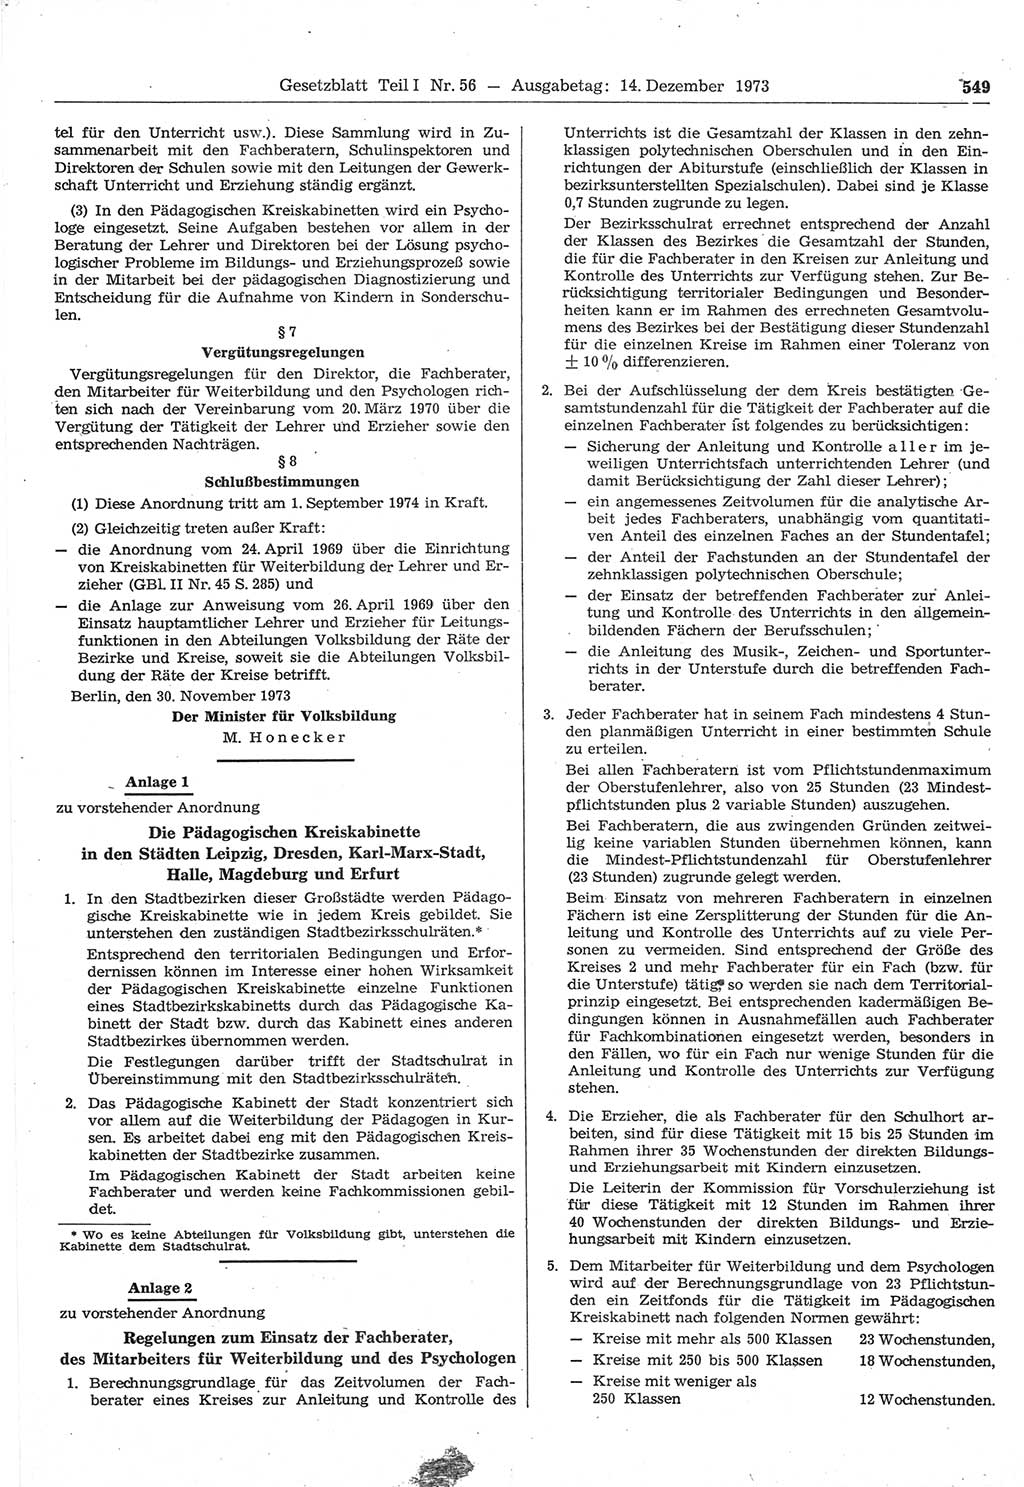 Gesetzblatt (GBl.) der Deutschen Demokratischen Republik (DDR) Teil Ⅰ 1973, Seite 549 (GBl. DDR Ⅰ 1973, S. 549)